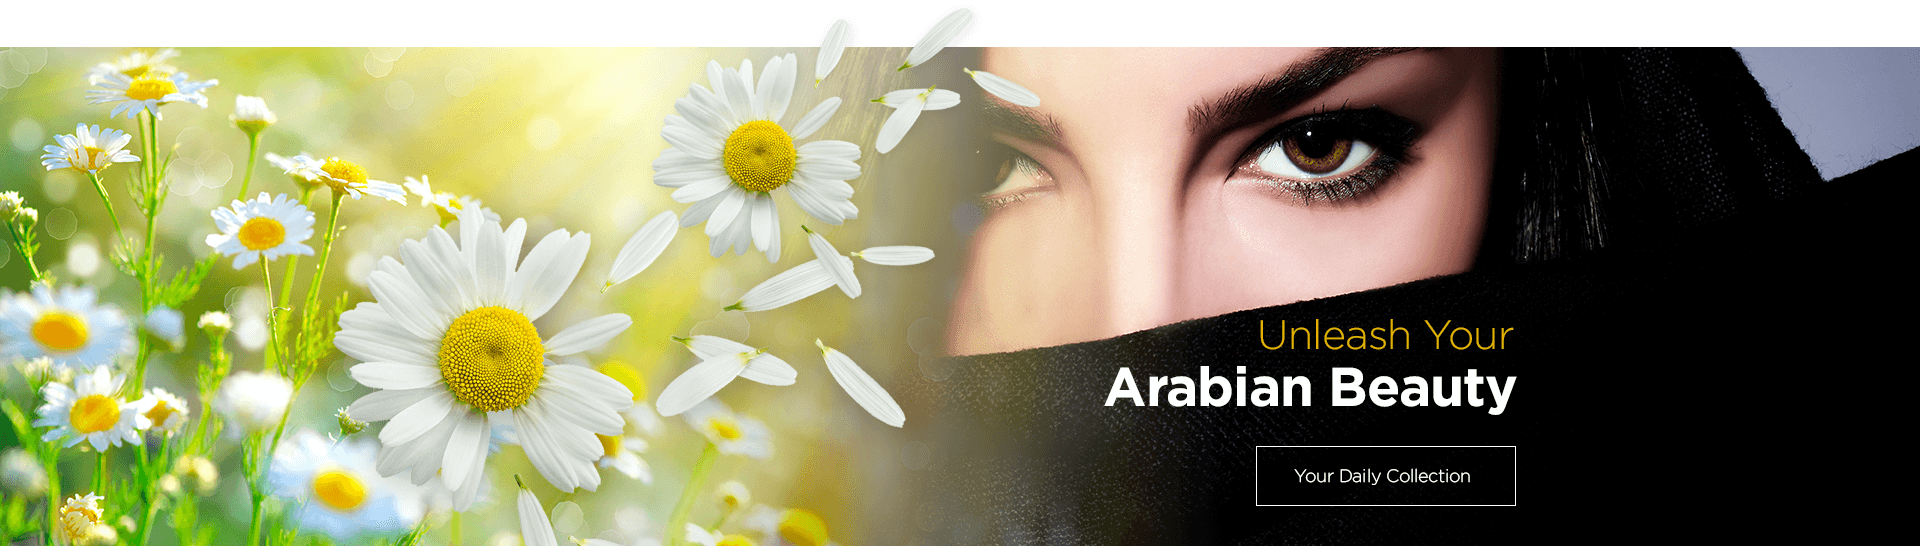 Unleash your Arabian Beauty